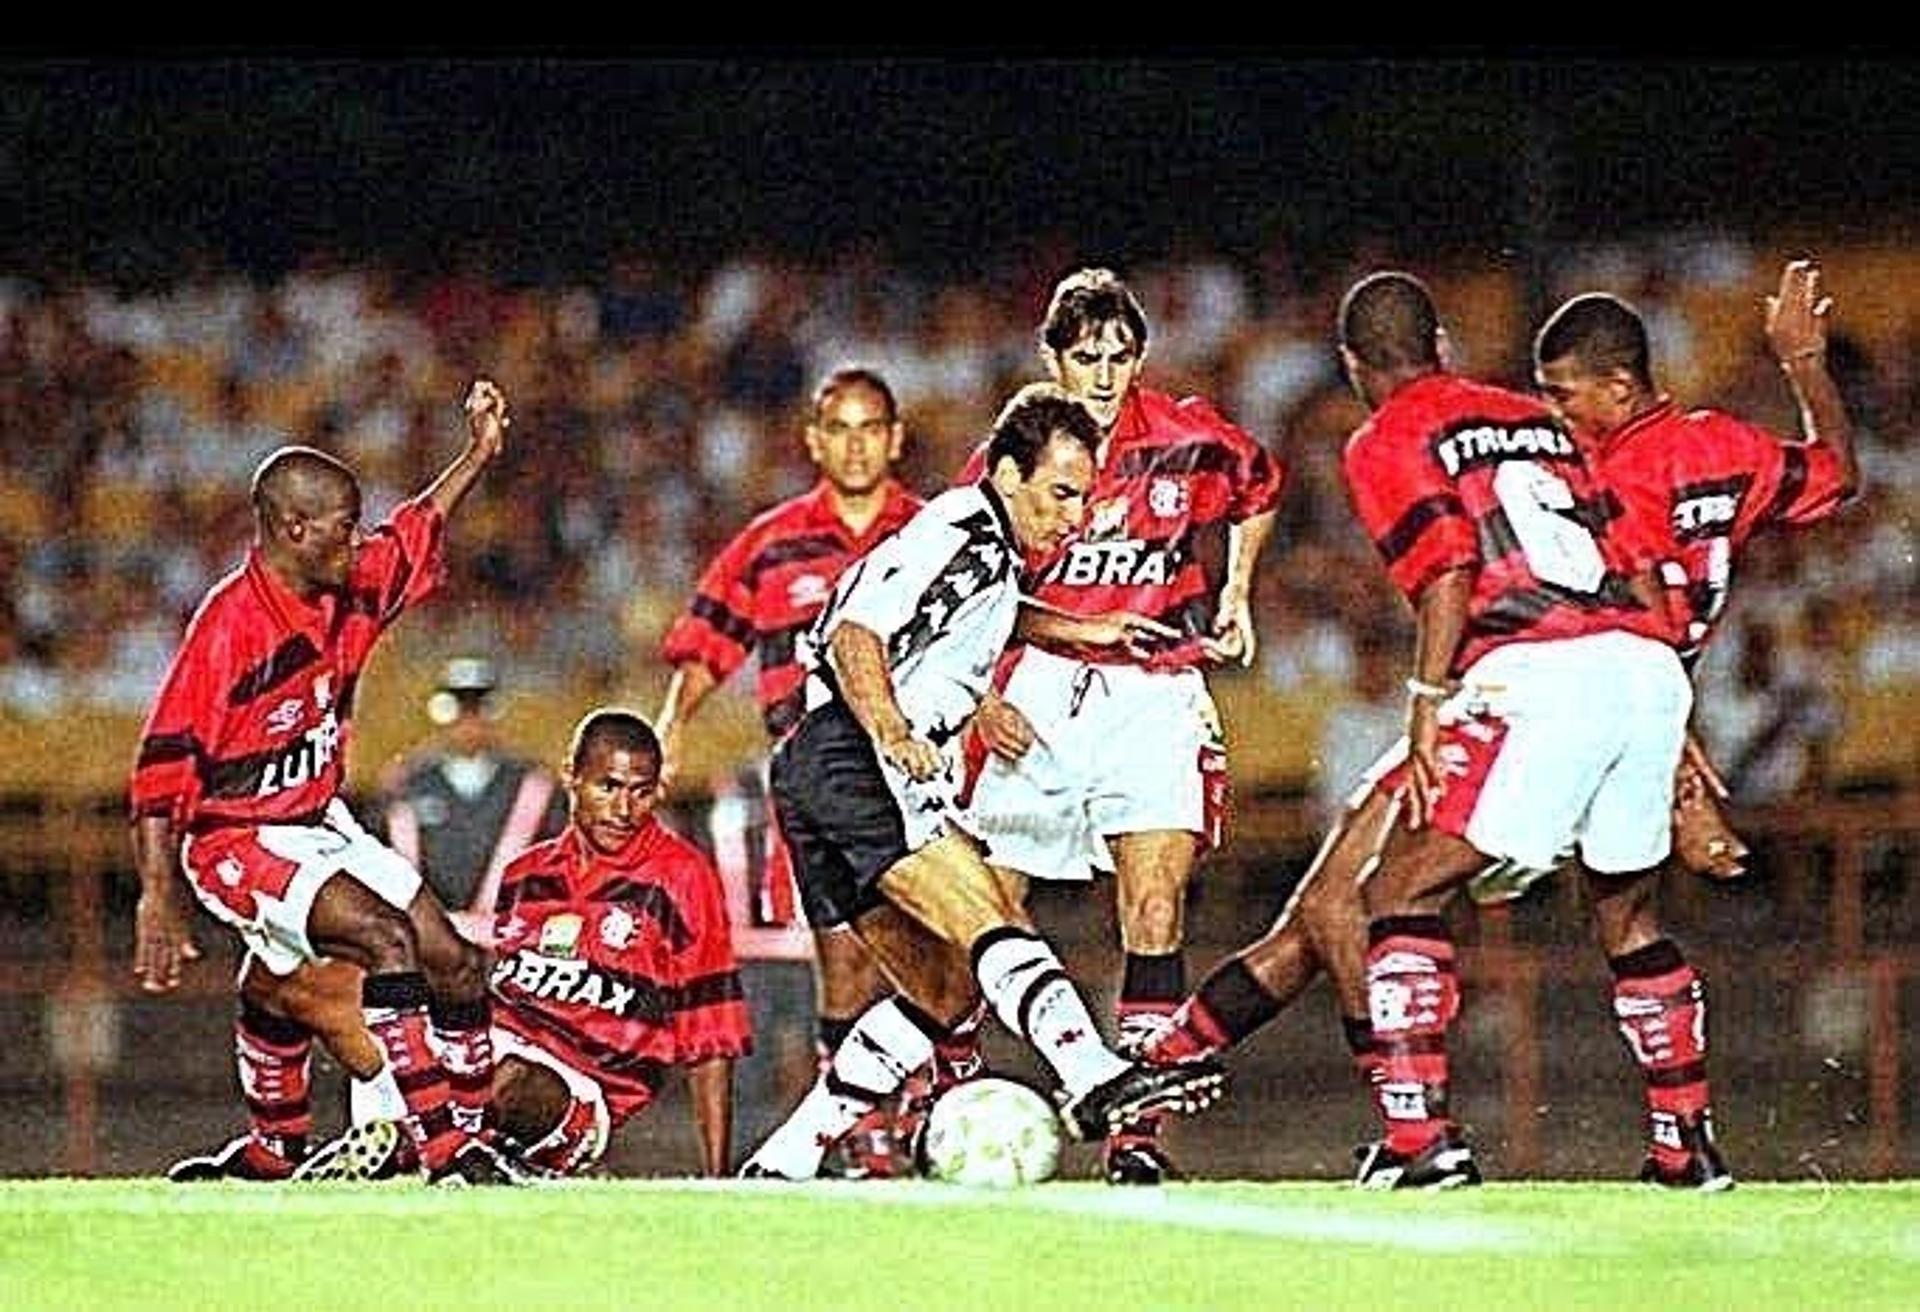 Edmundo x Flamengo - 1997